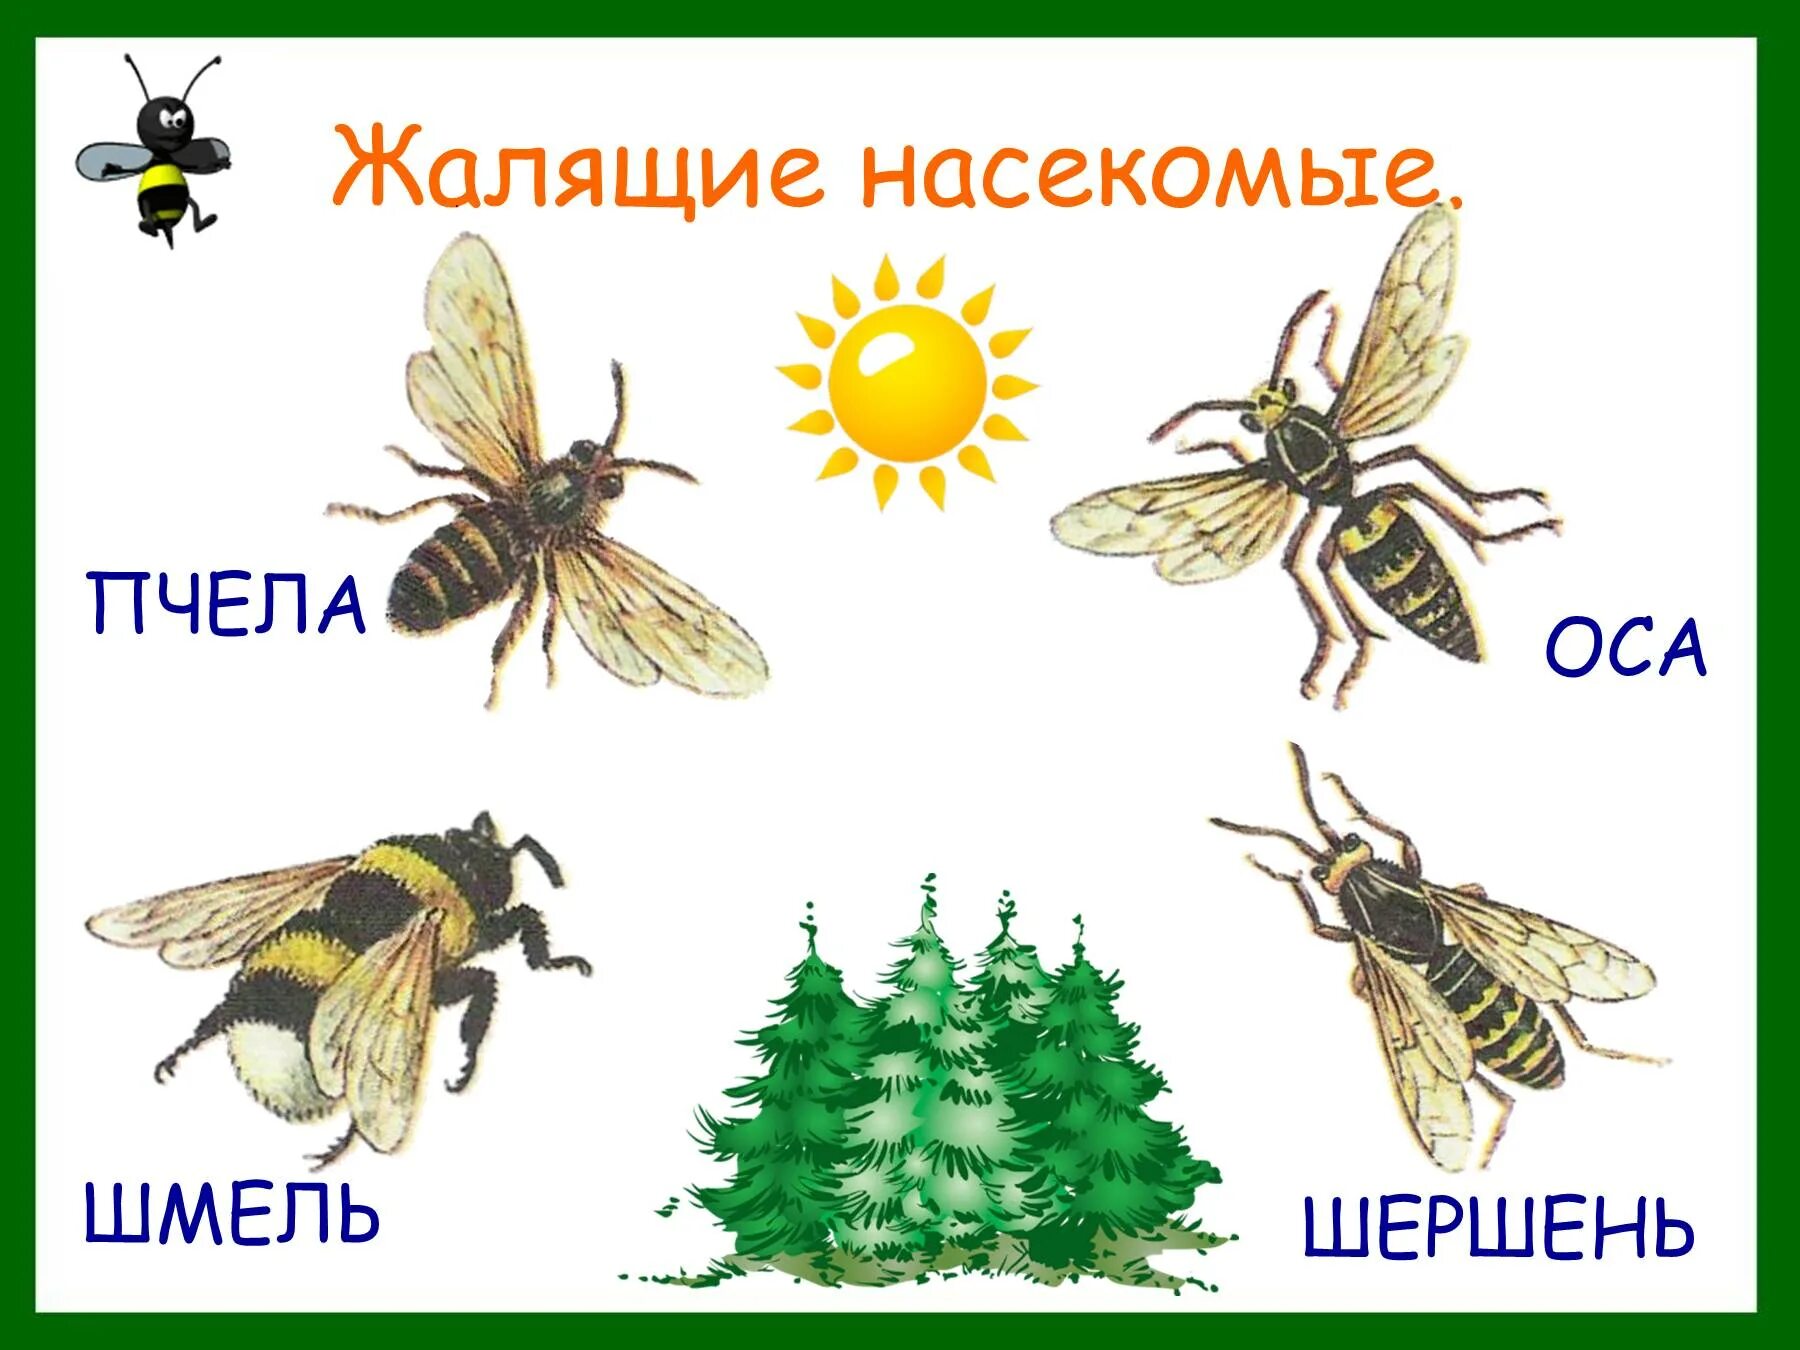 Насекомое пчела 2 класс. Жалящие насекомые в лесу 2 класс. Лесные опасности жалящие насекомые. Опасности с насекомыми в лесу для детей. Насекомые для дошкольников.